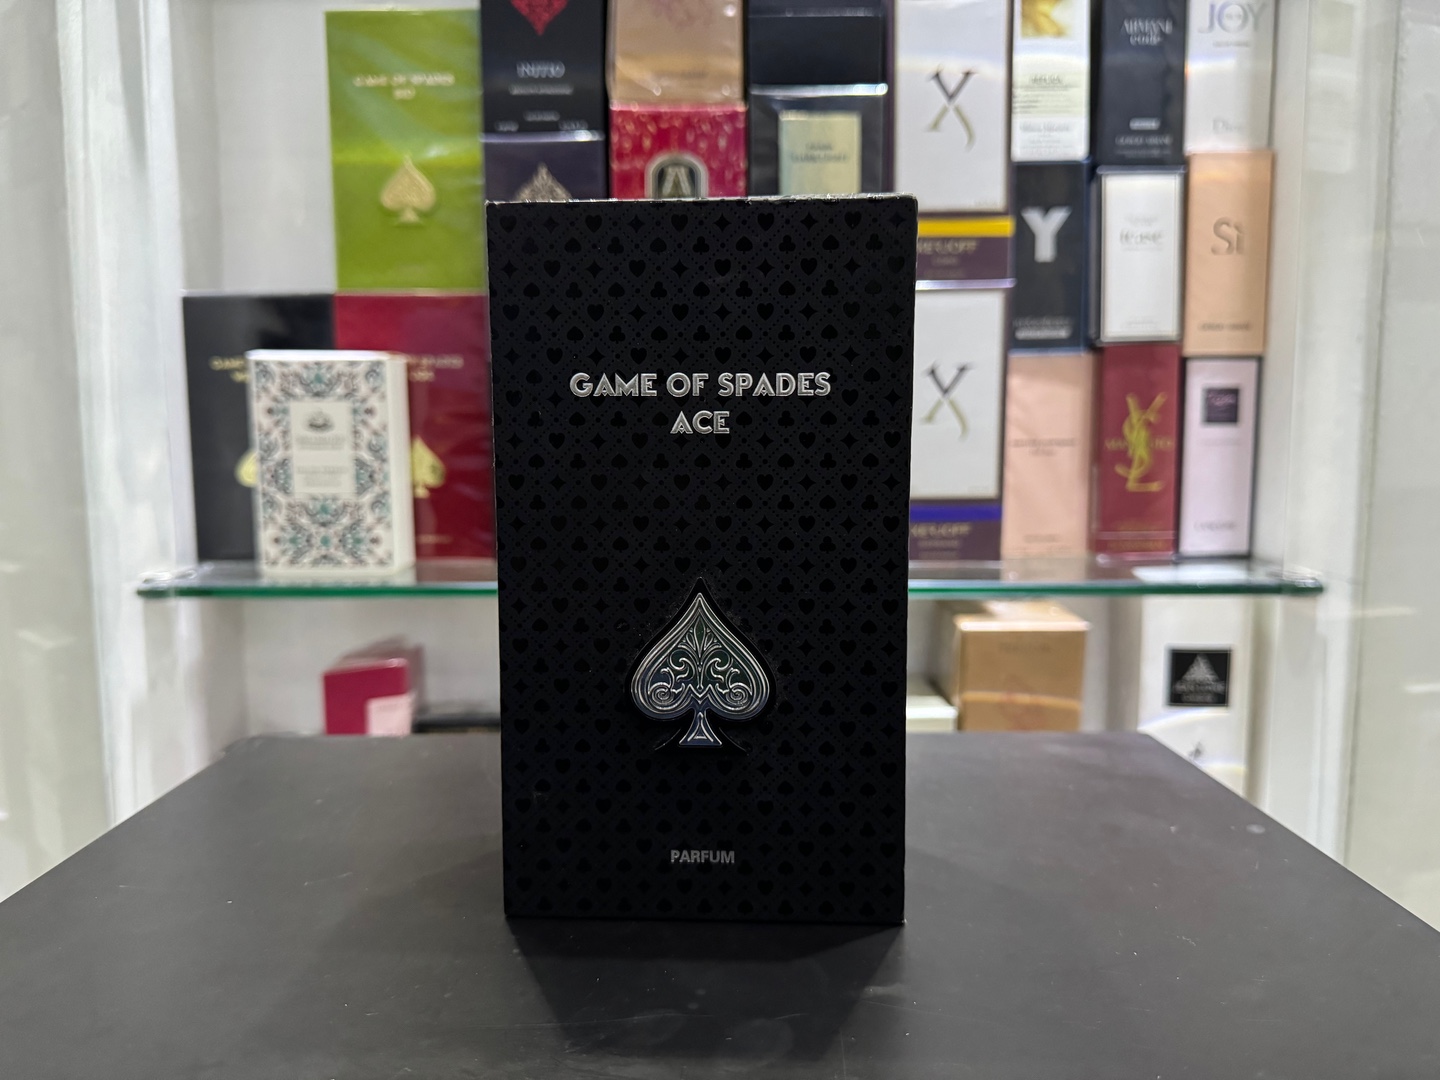 joyas, relojes y accesorios - Perfume Jo Milano Paris Game Of Spades Ace Nuevo,Original RD$ 5,500 NEG